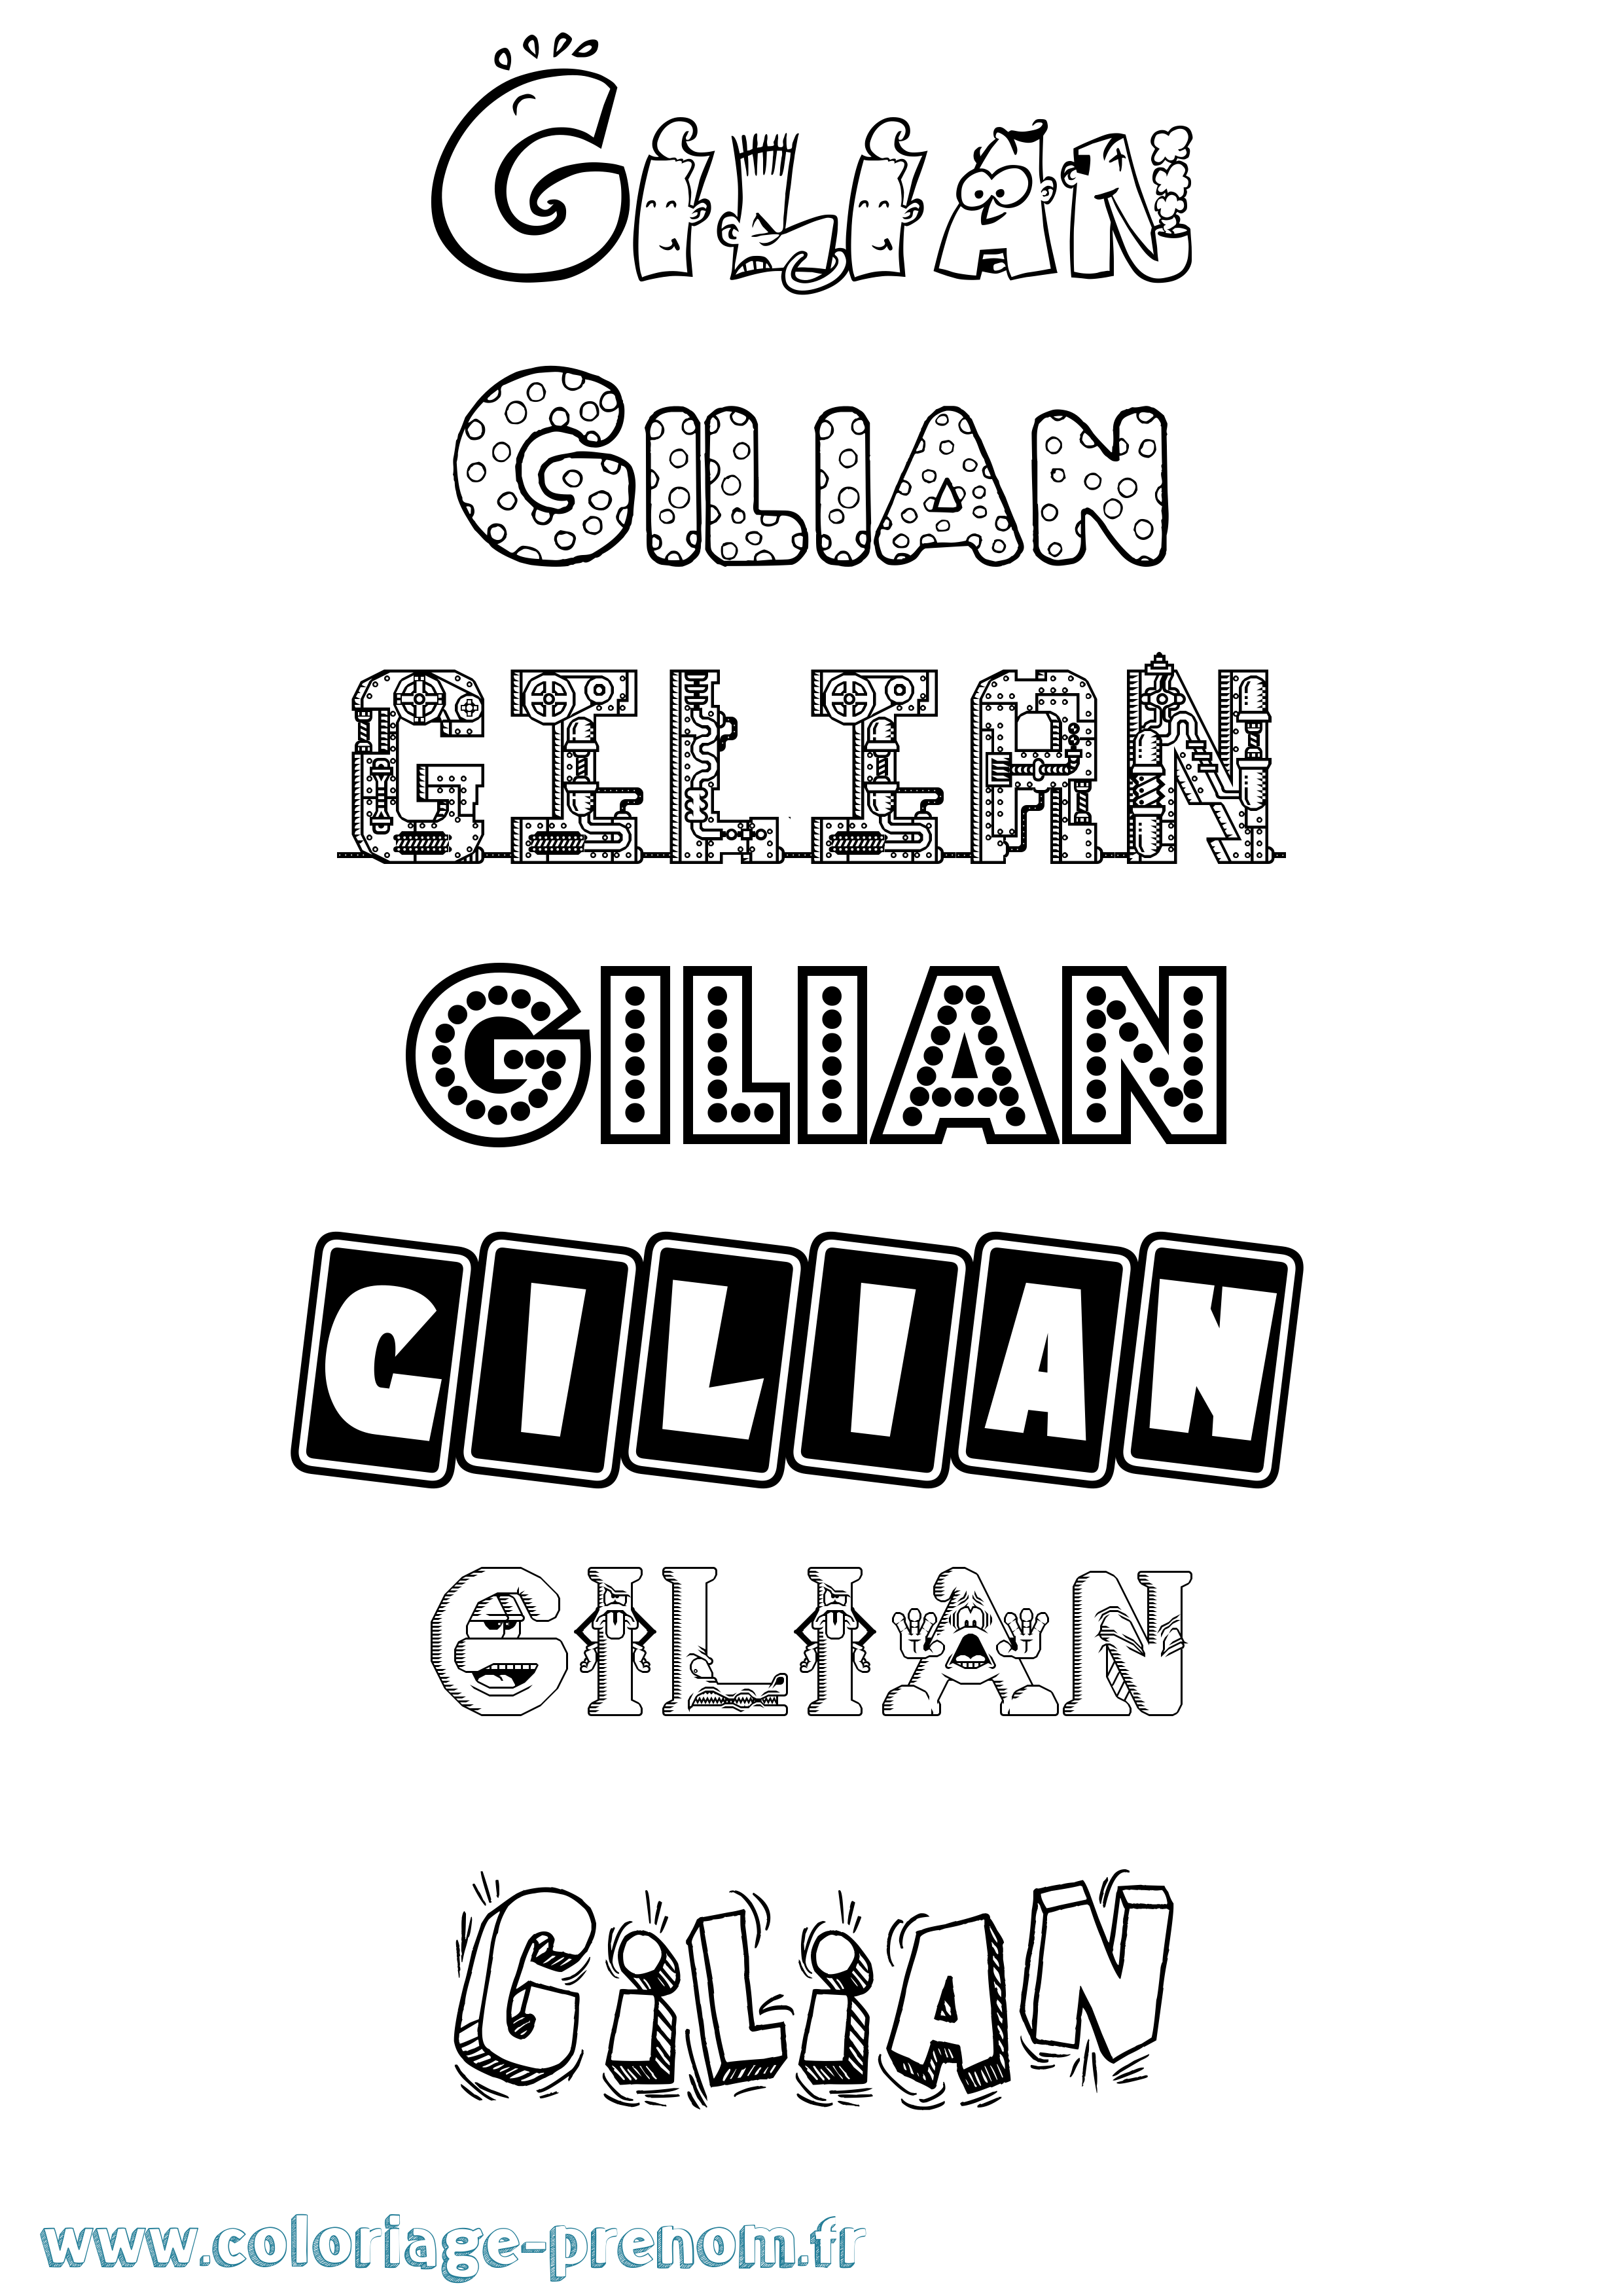 Coloriage prénom Gilian Fun